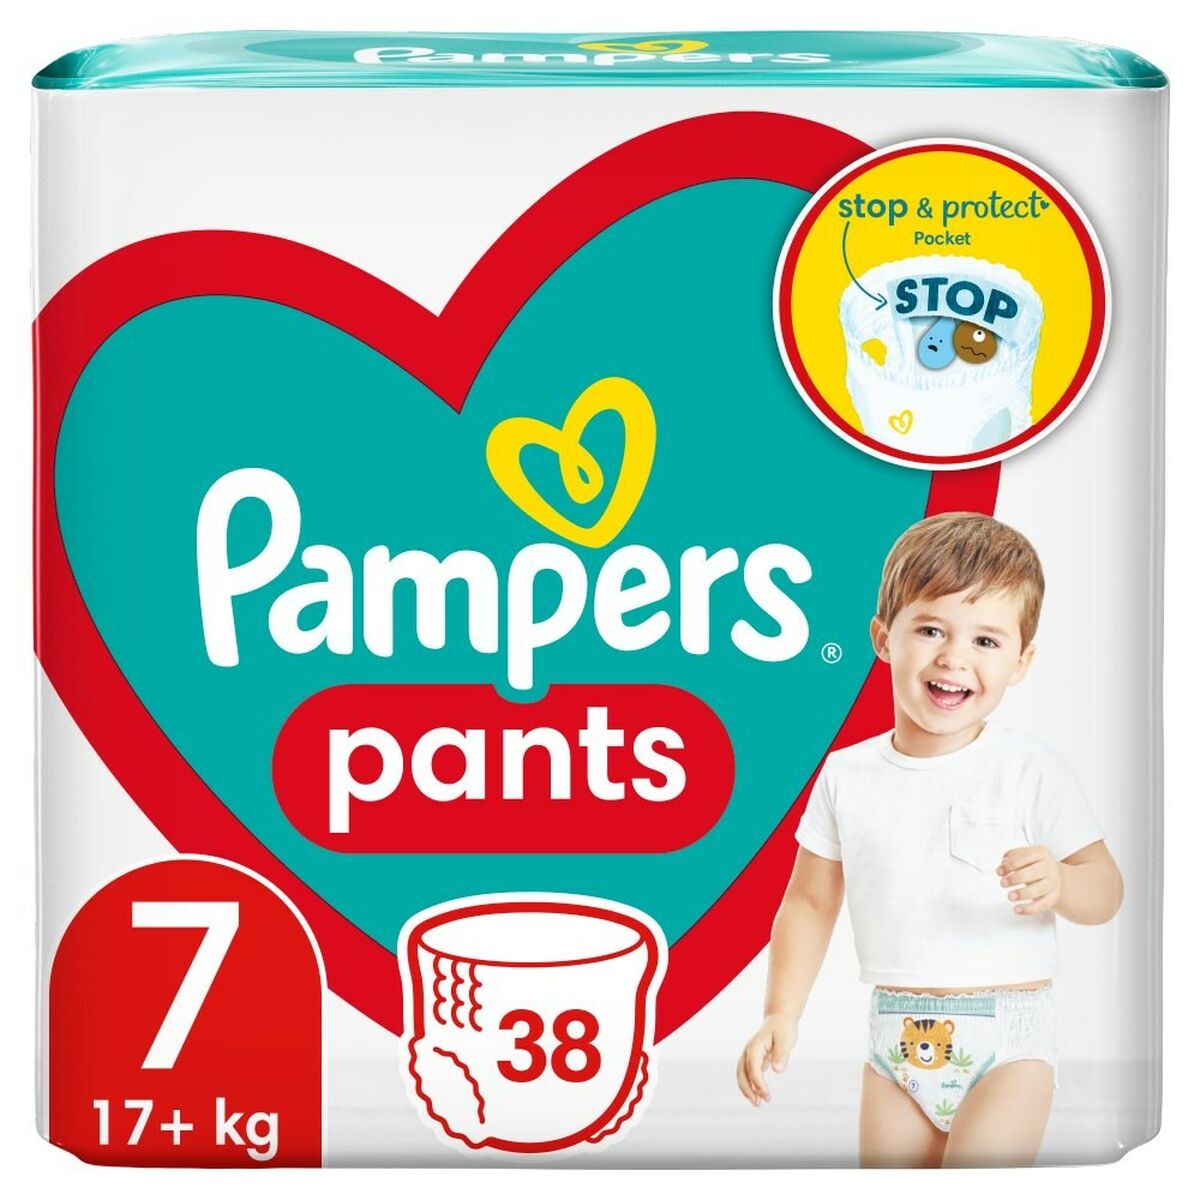 Pampers Pants - Pañales braguita, talla 6 (15 + kg), 19 uds.